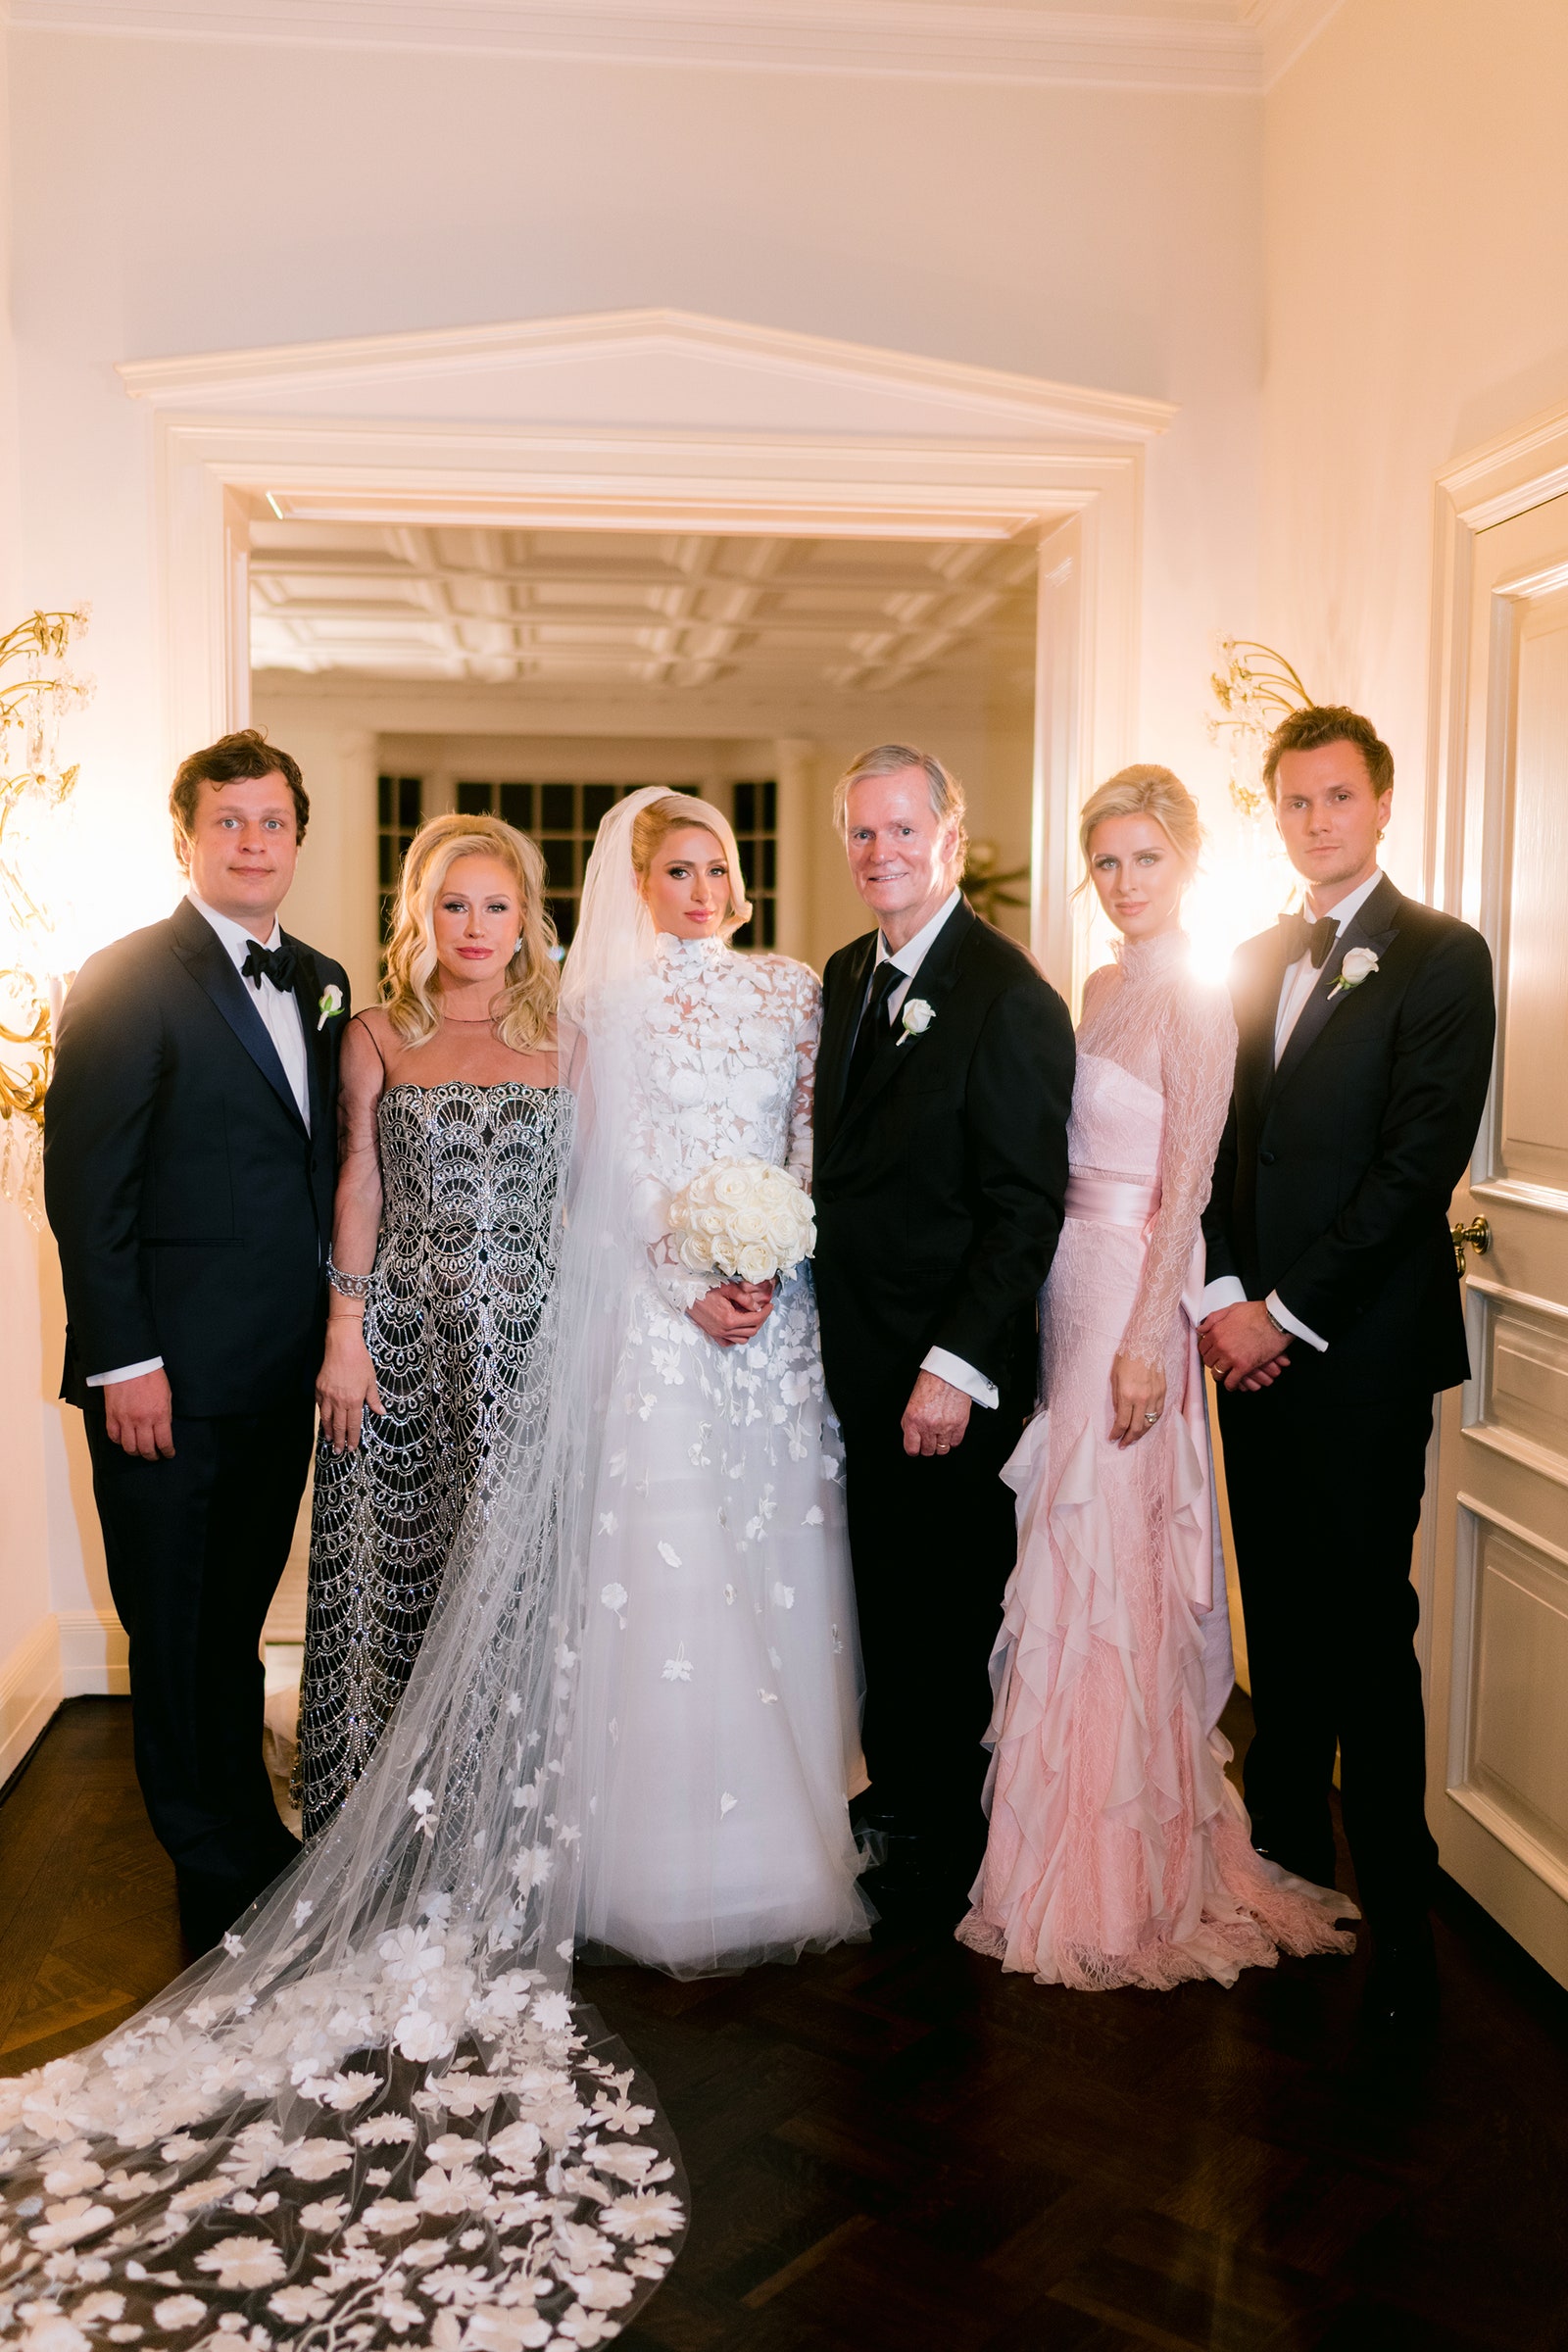 Cận cảnh đám cưới xa hoa, kéo dài suốt 3 ngày ở biệt thự triệu đô của Paris Hilton - Ảnh 5